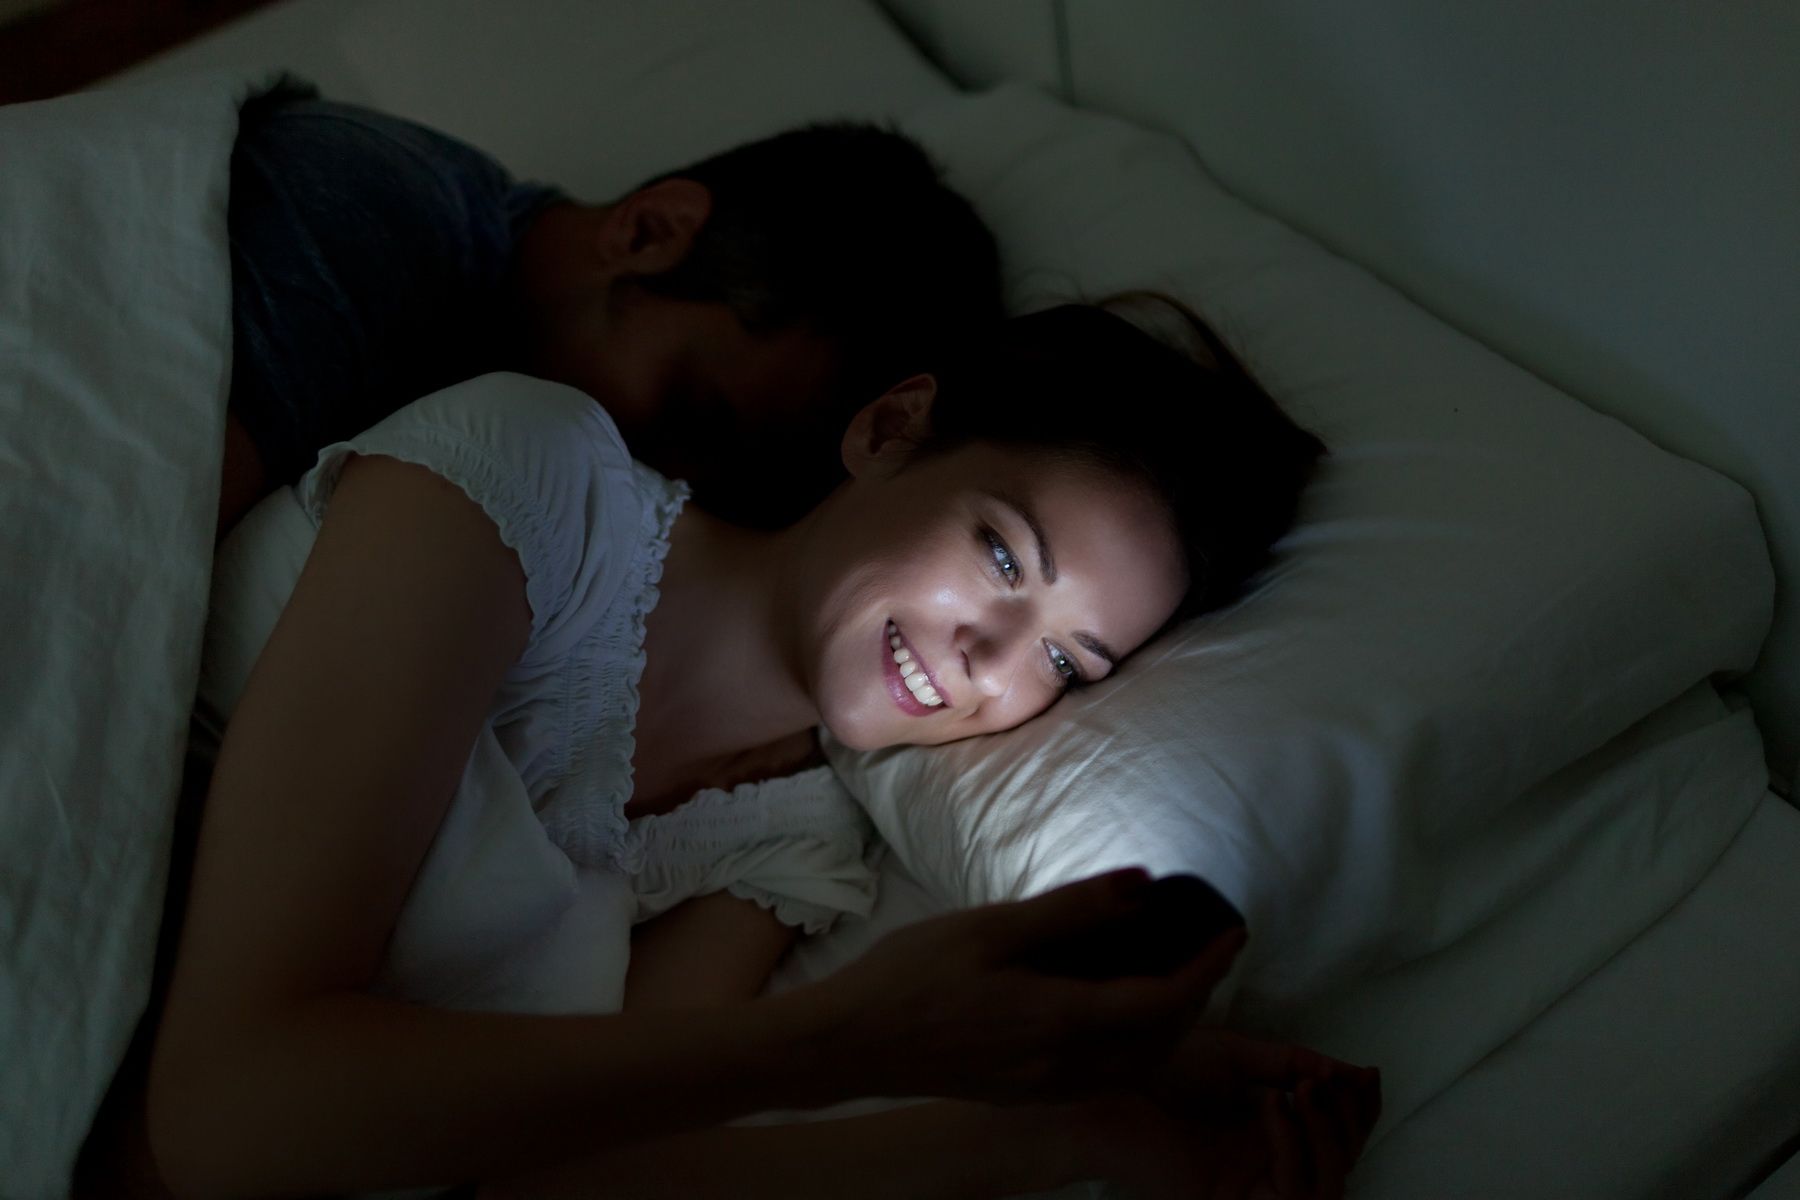 сон может затруднить использование телефона перед тем, как лечь